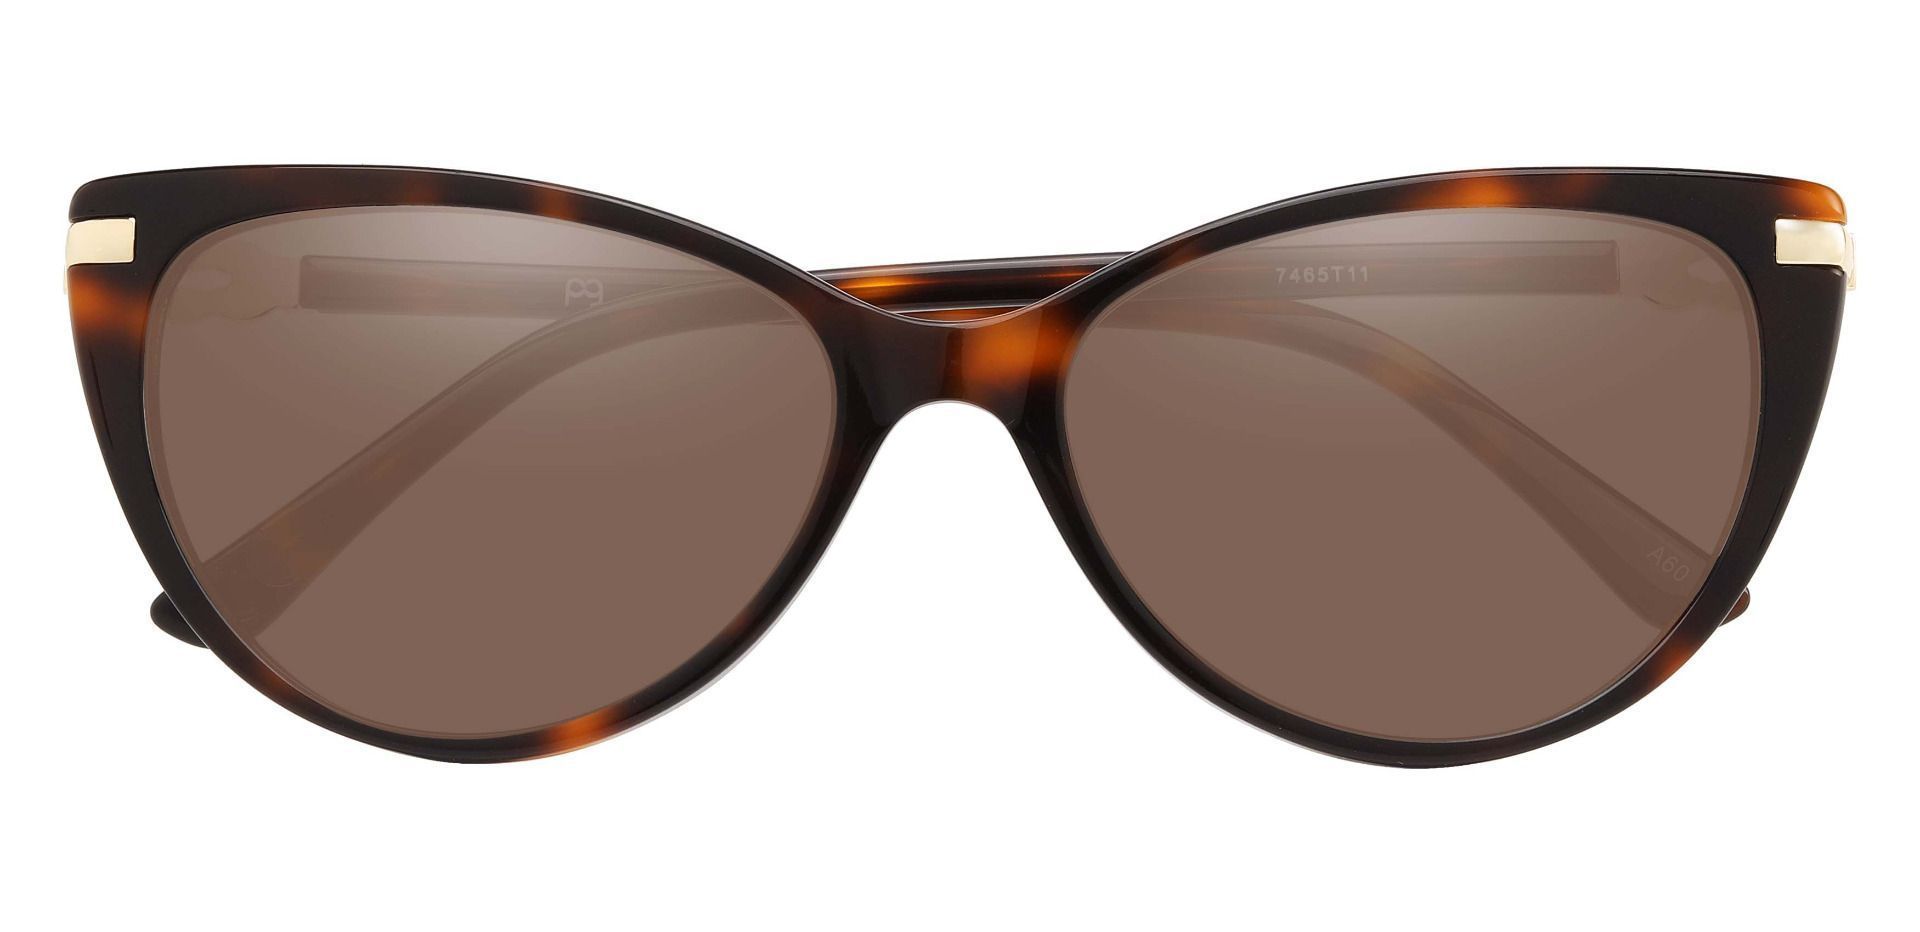 Starla Cat Eye Progressive Sunglasses - Tortoise Frame With Brown Lenses